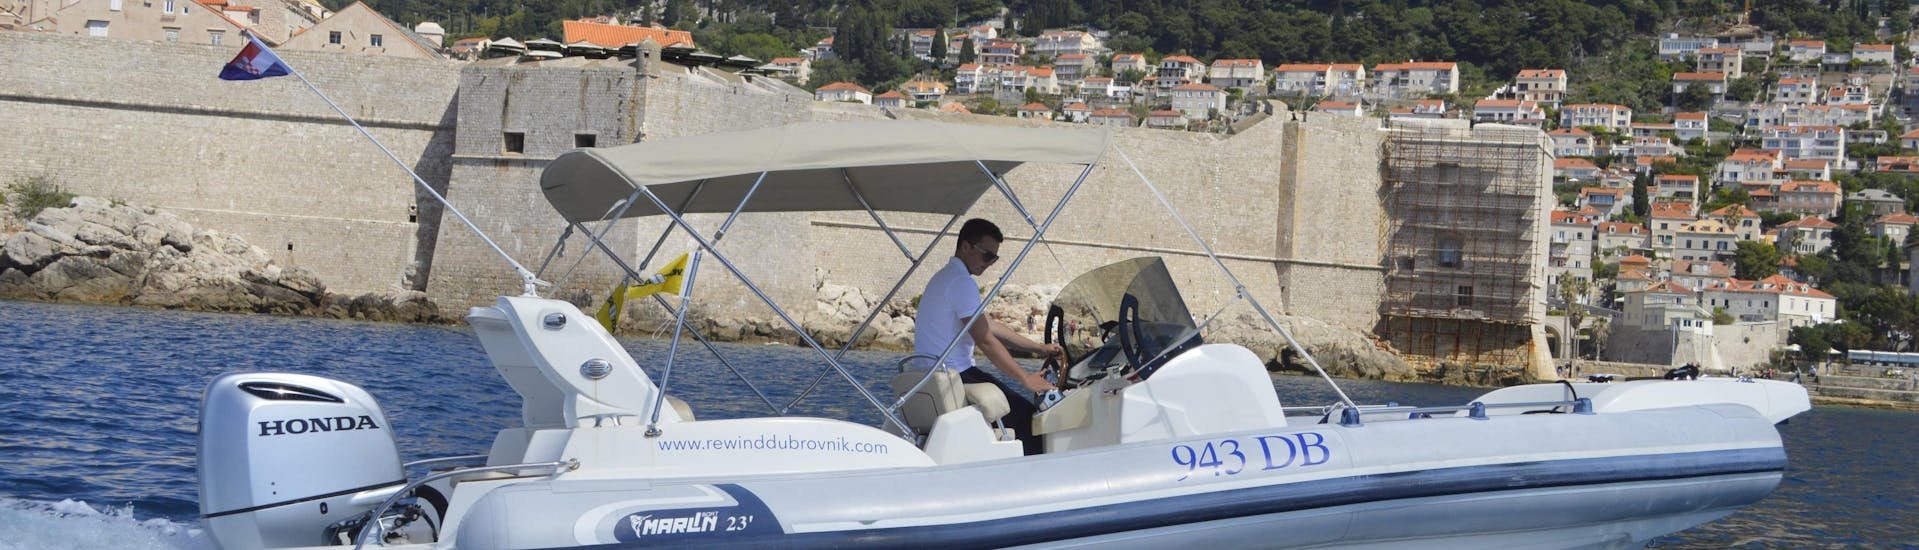 Privé boottocht van Dubrovnik naar Korčula met zwemmen & wild spotten.